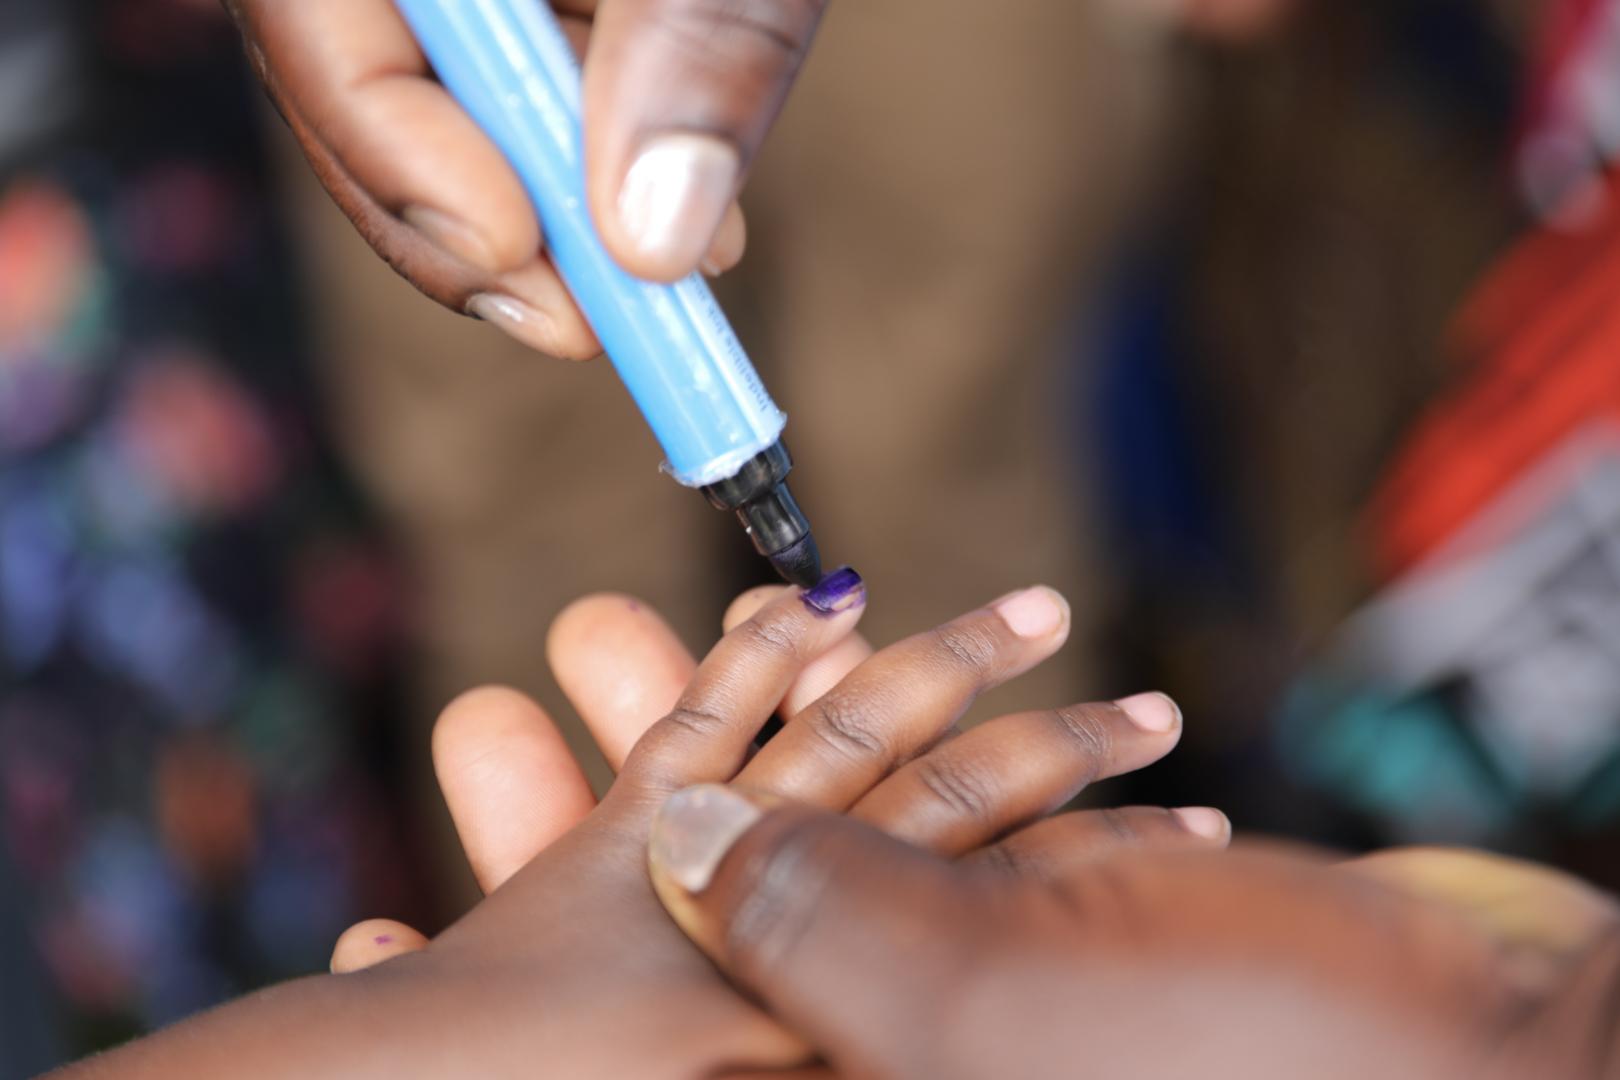 Environ 16 000 vaccinateurs et mobilisateurs communautaires ont été déployés lors du troisième tour de la campagne de lutte contre la polio au Mozambique. Leurs efforts pour briser la peur de se faire vacciner sont essentiels pour atteindre des taux de vaccination élevés afin d'éradiquer la polio. 